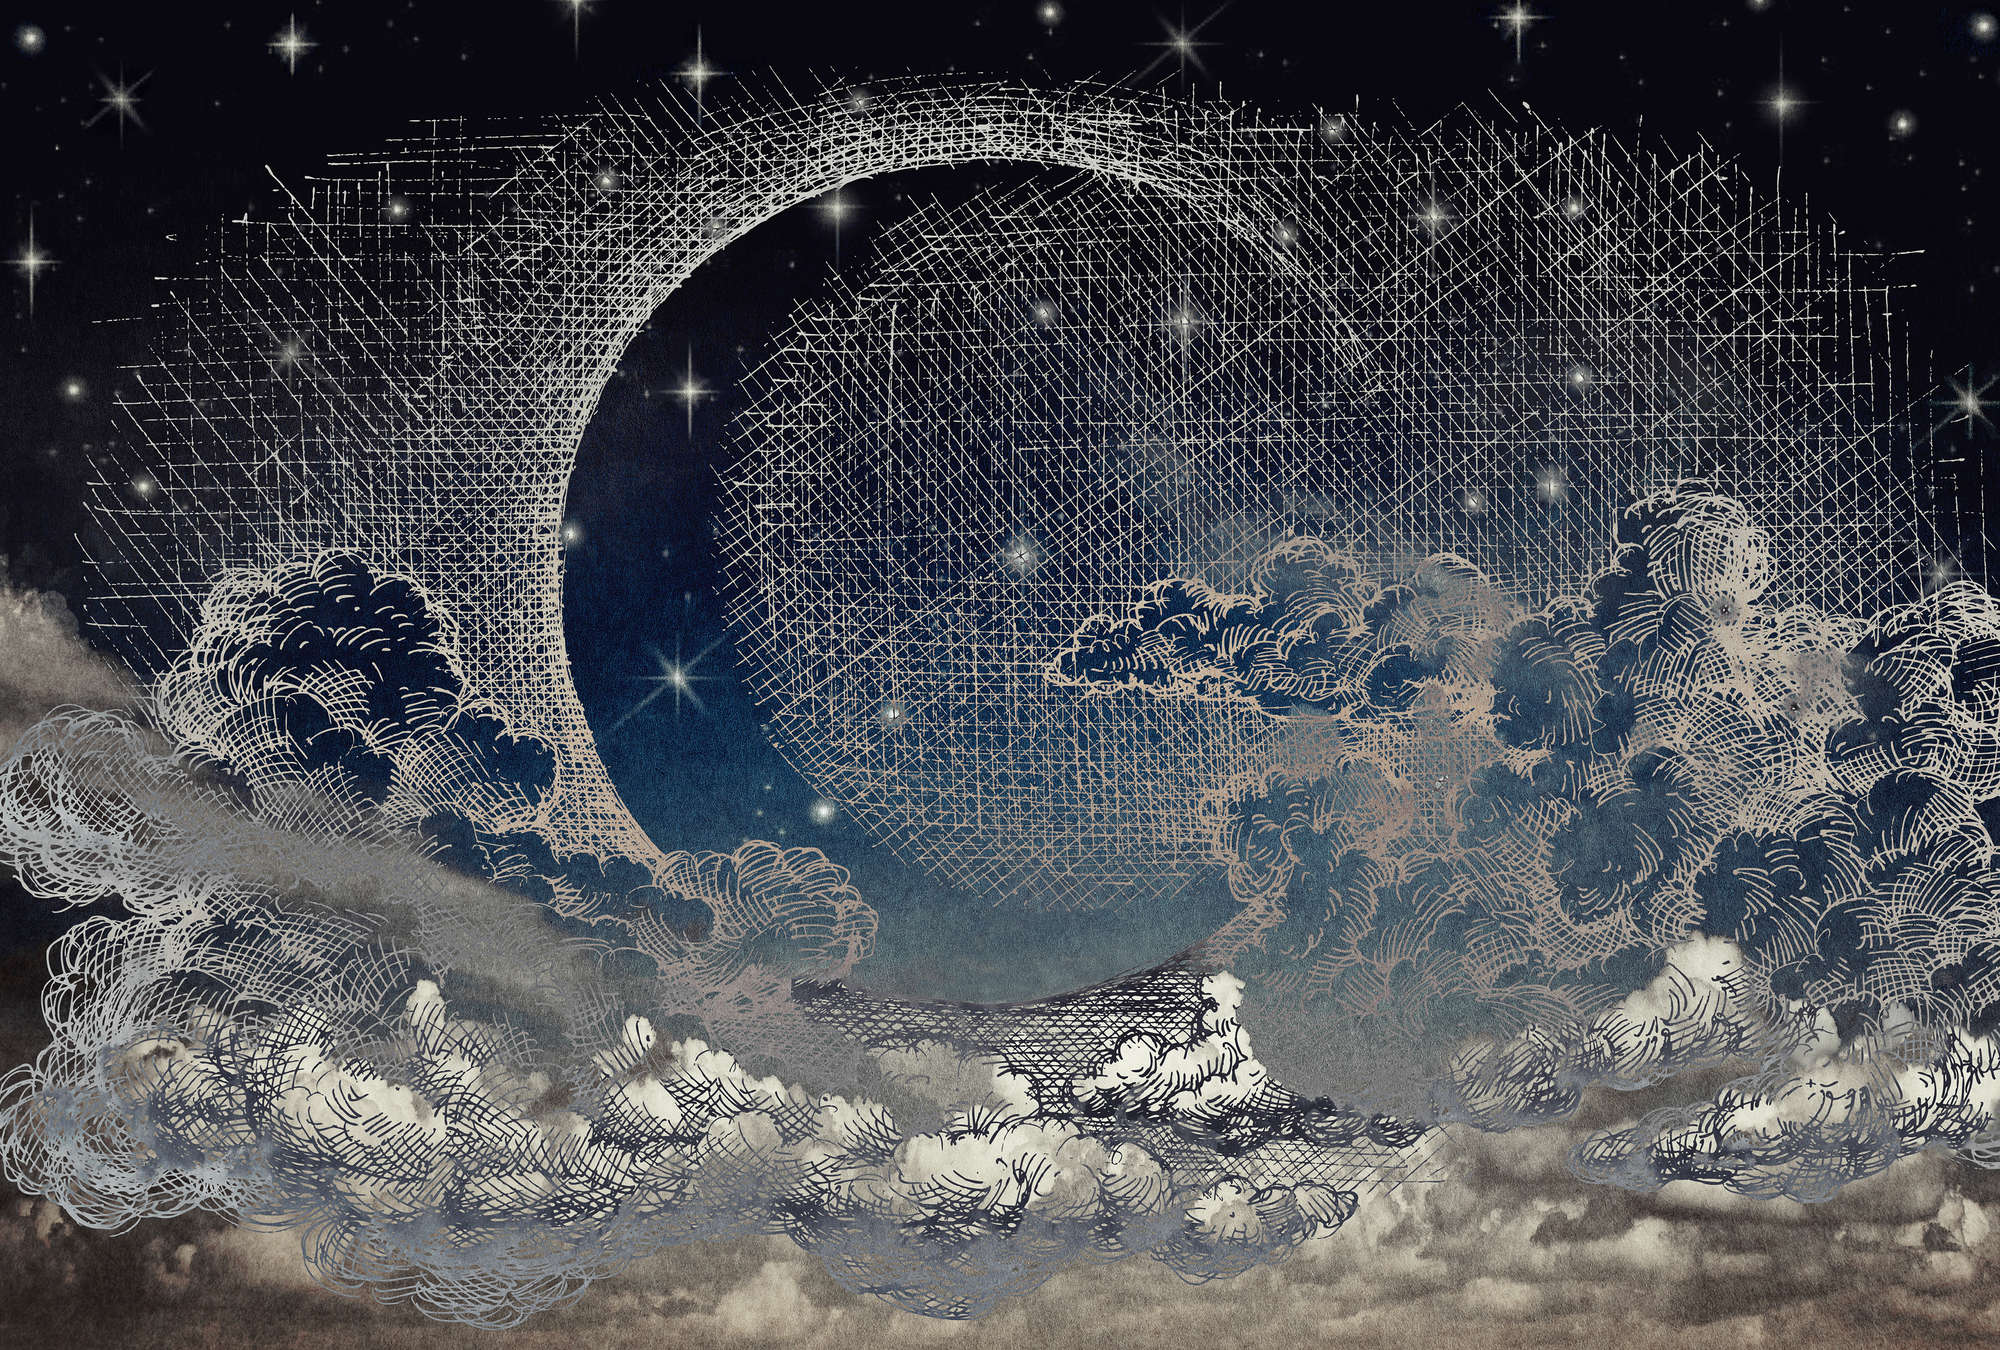             Fototapete Nacht, Sichelmond & Wolken im Comic-Stil – Beige, Weiß, Blau
        